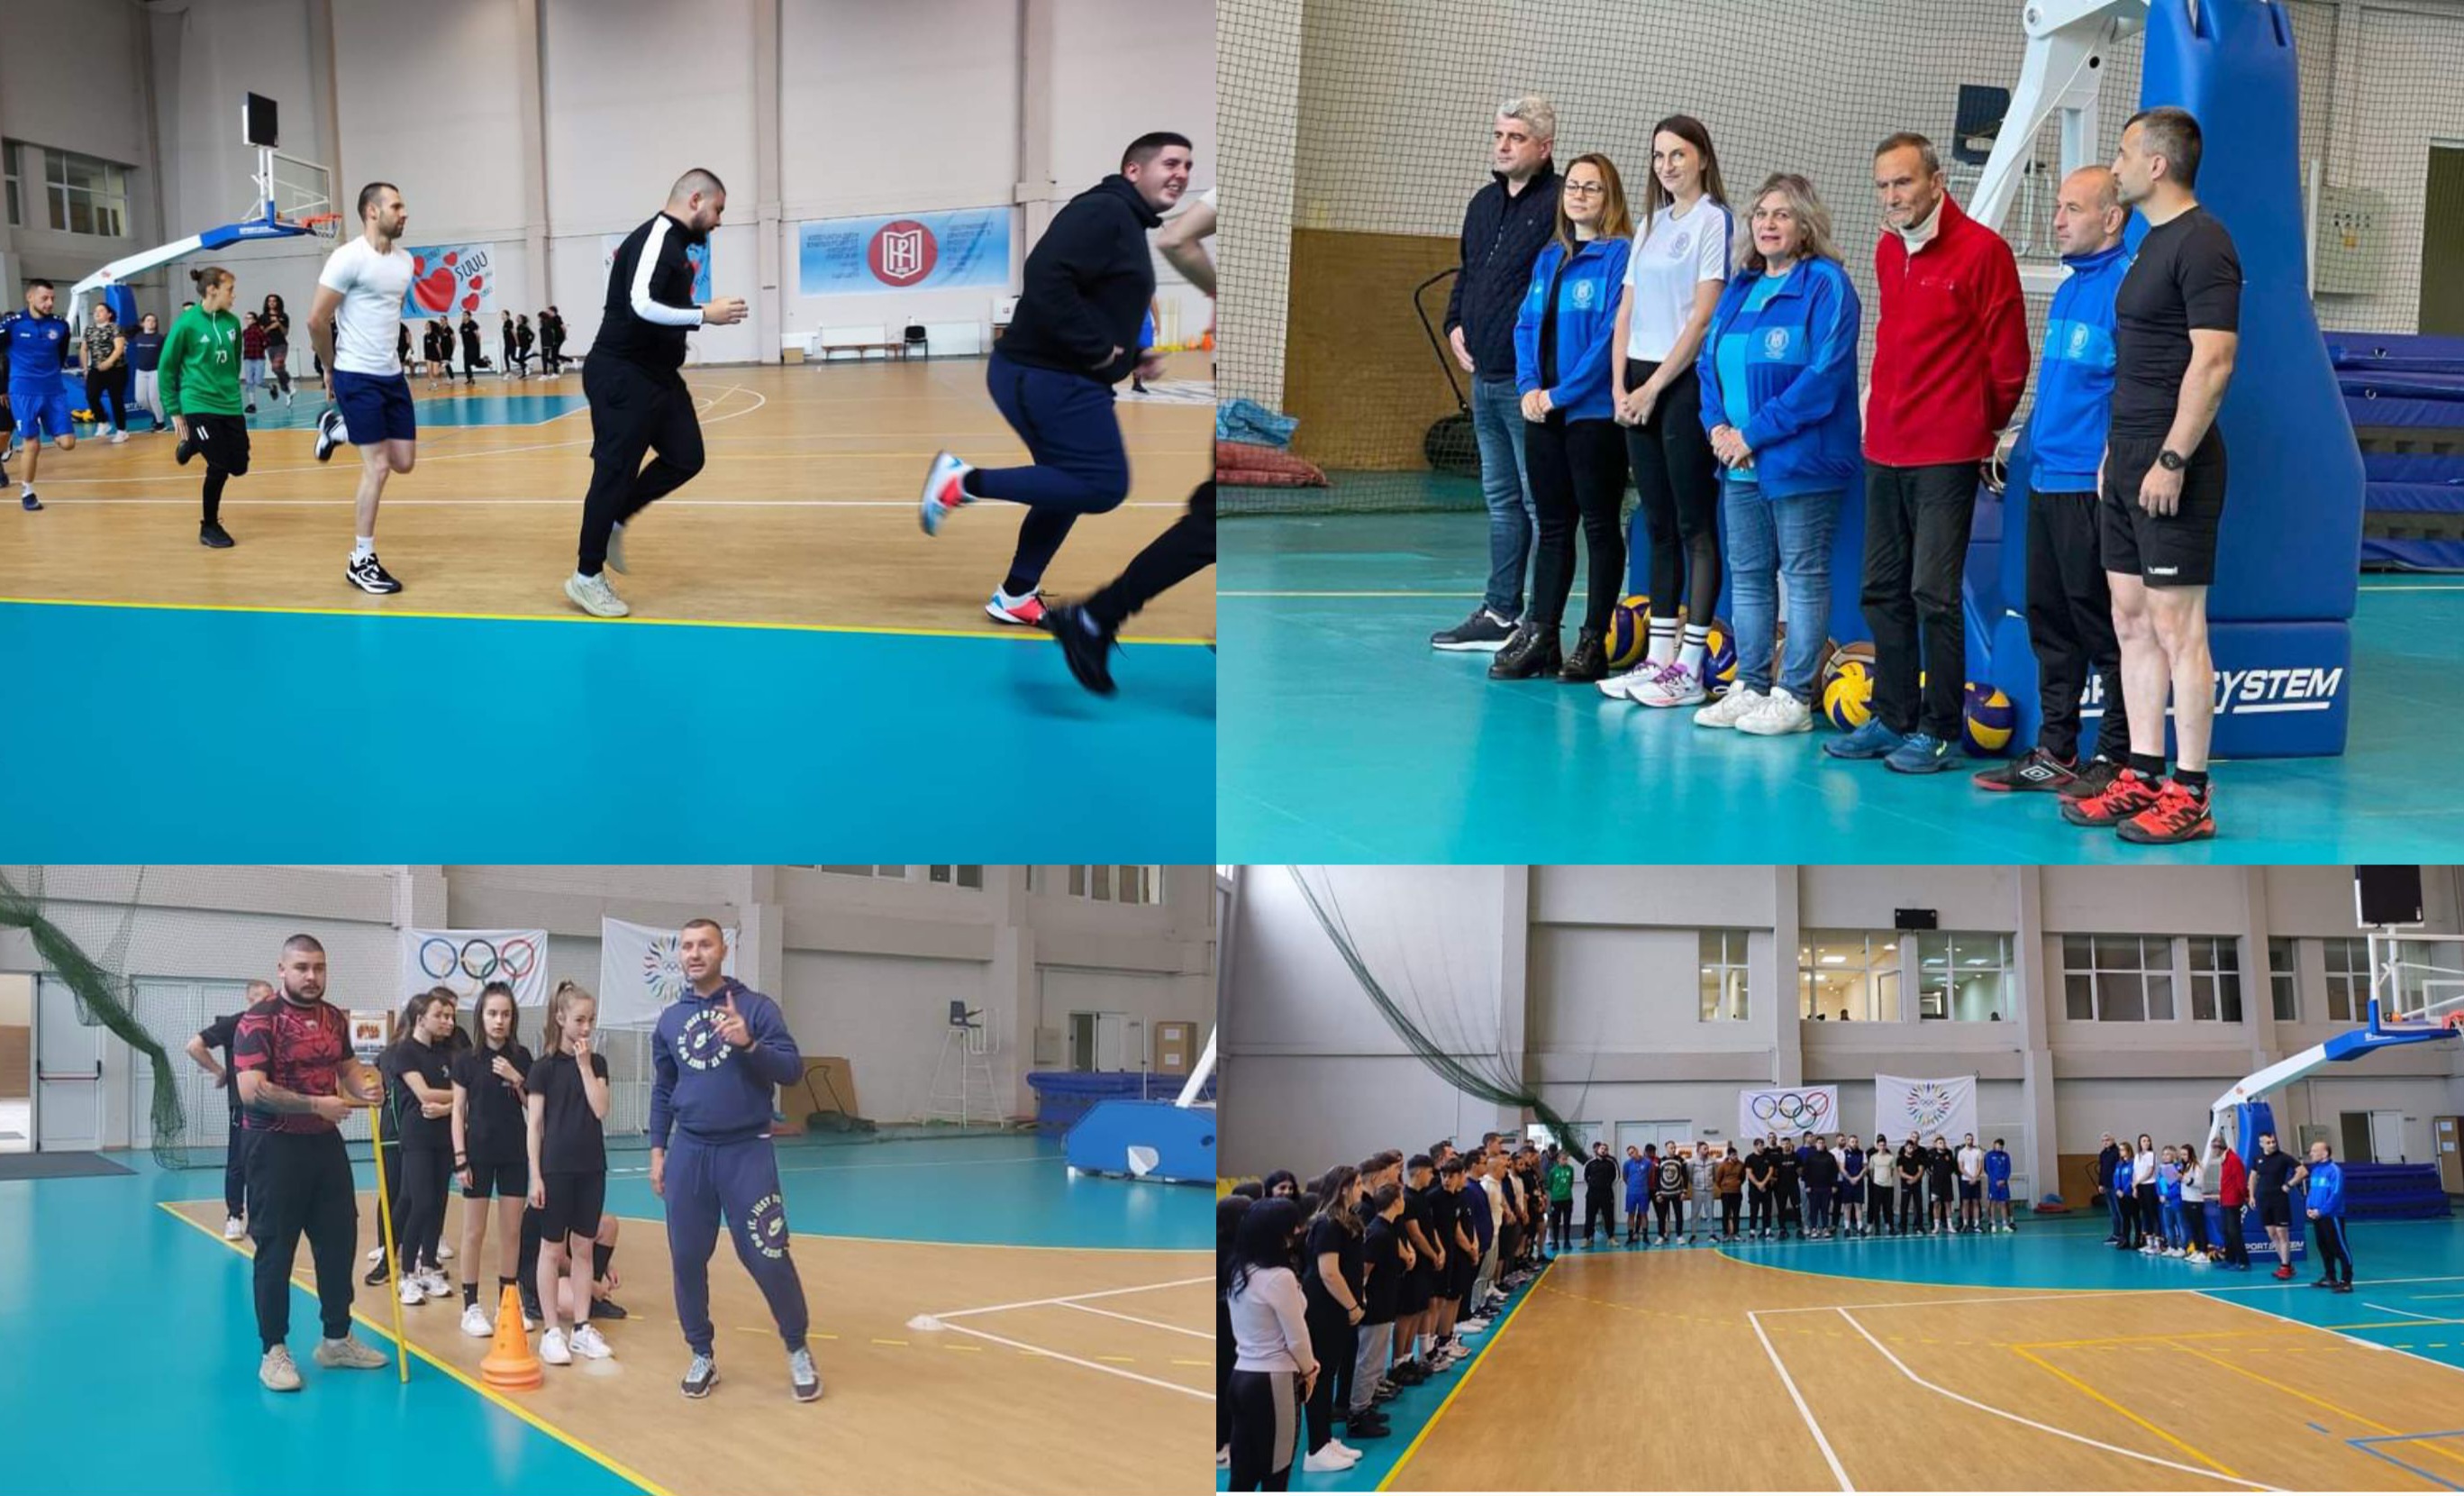 Със спортен празник отбелязаха 130 години от пристигането на швейцарските учители по гимнастика в България в ЮЗУ  Неофит Рилски